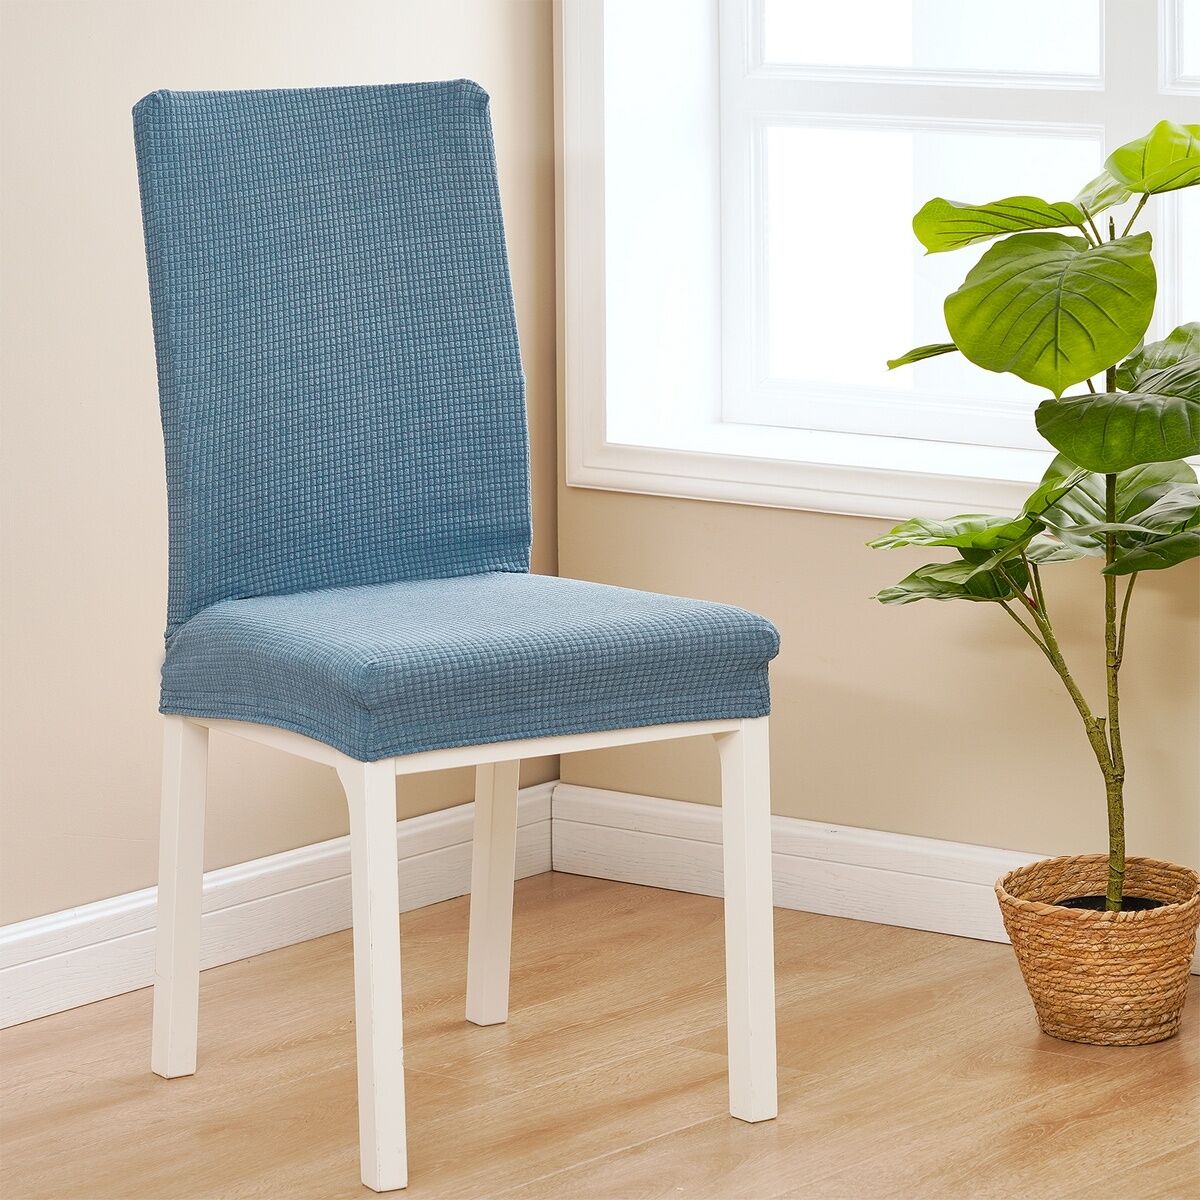 4Home Elastyczny pokrowiec na krzesło Magic clean niebieski, 45 - 50 cm, zestaw 2 szt.